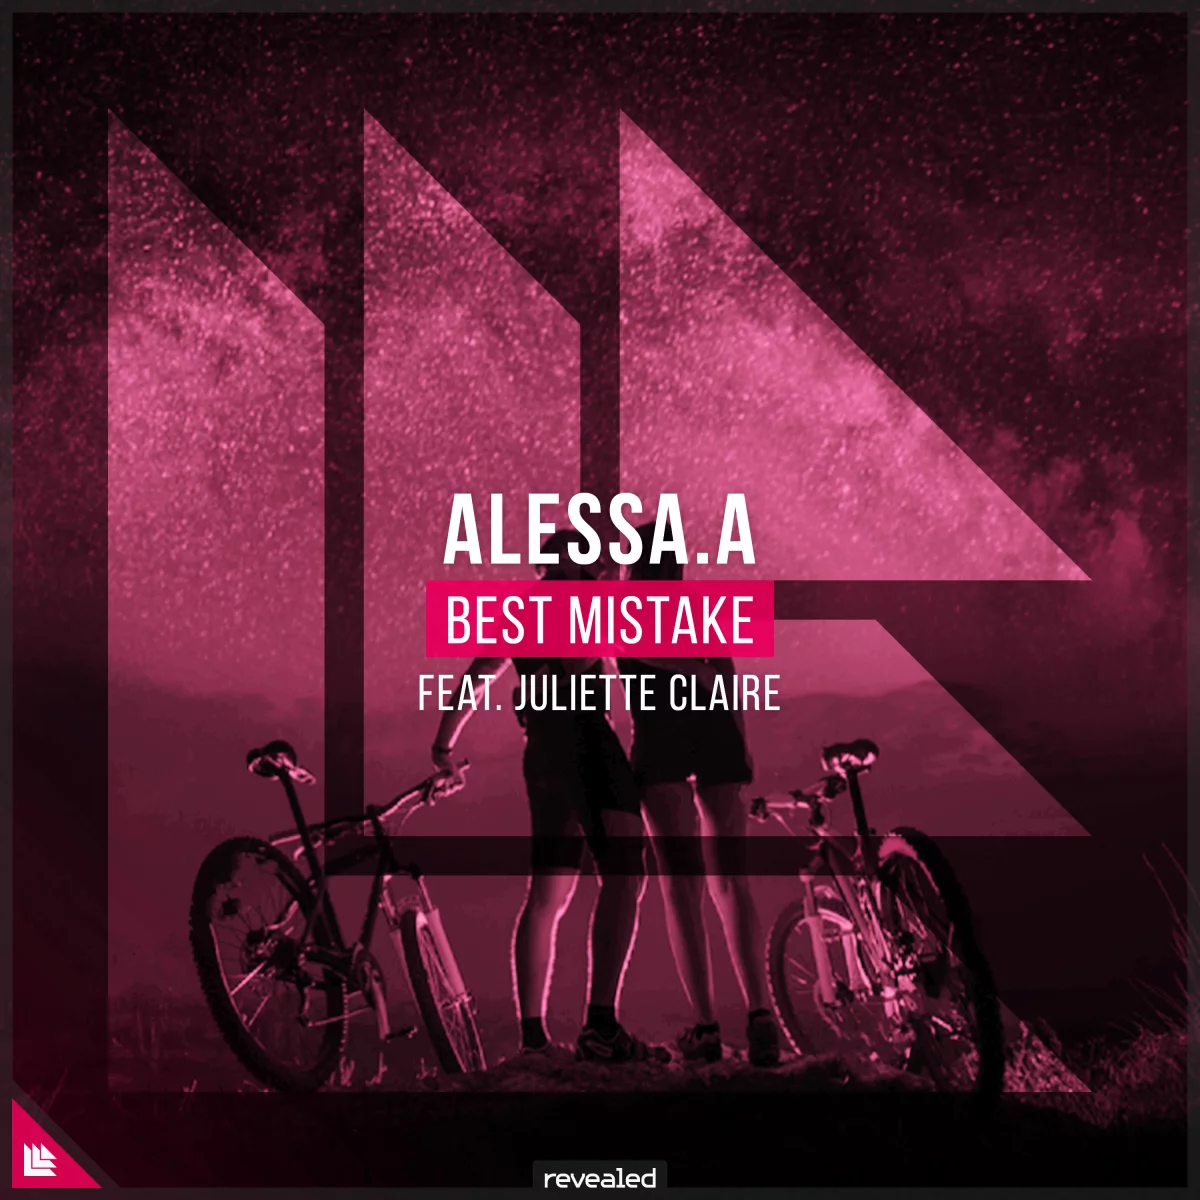 Best Mistake - ALESSA.A⁠ feat. Juliette Claire⁠